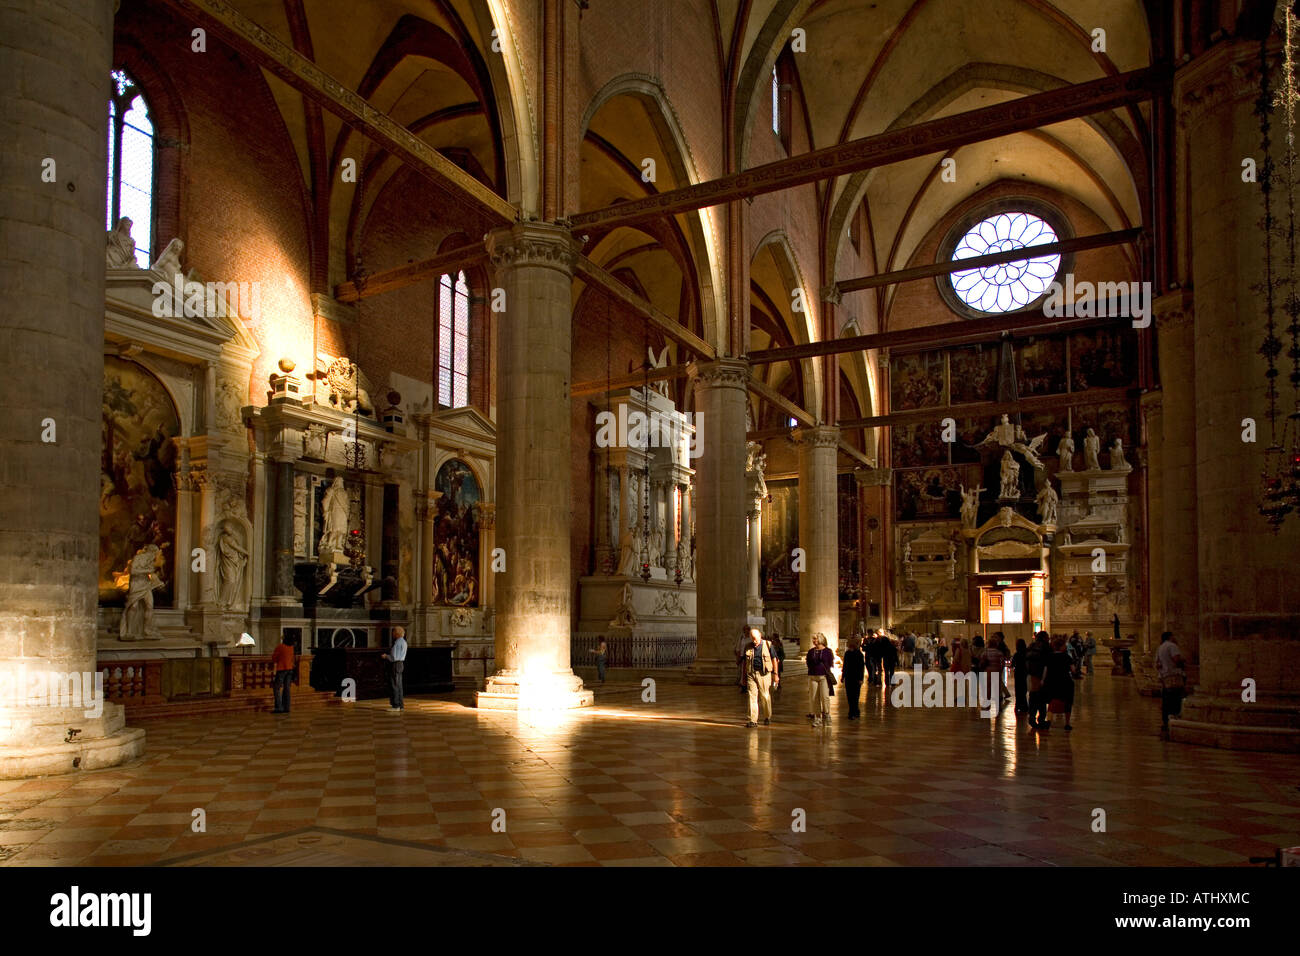 L'intérieur de Santa Maria Gloriosa dei Frari Venise Italie Banque D'Images